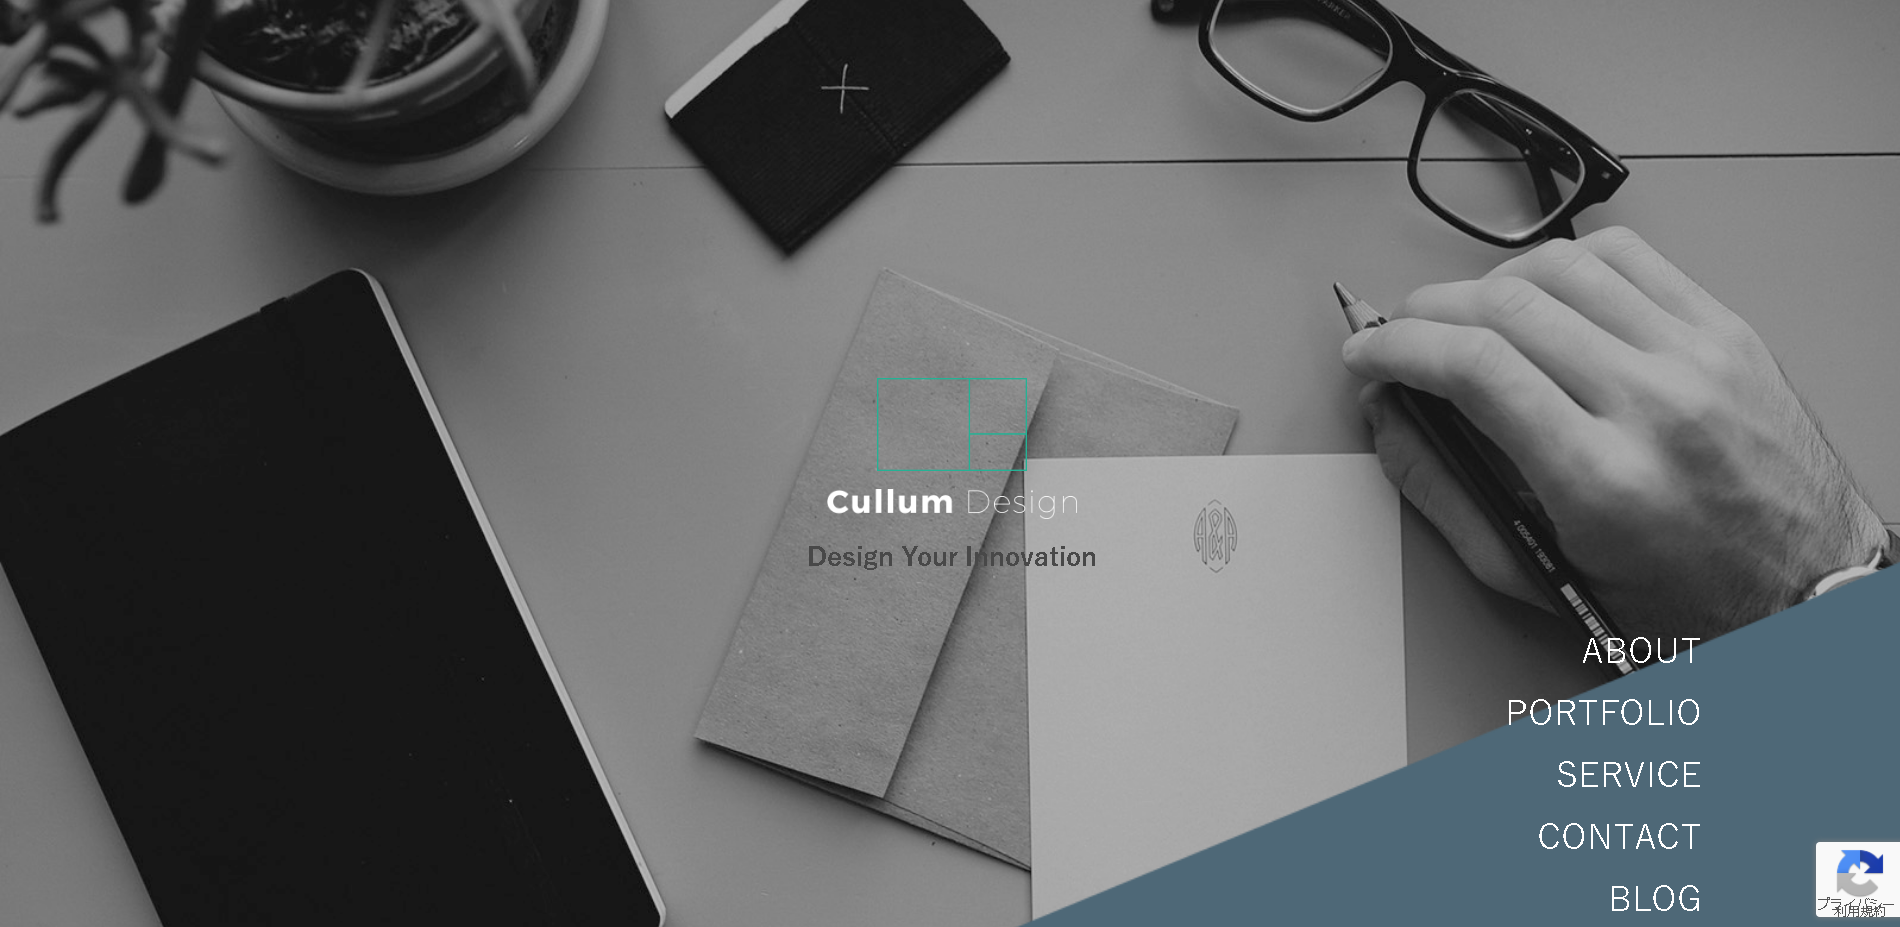 Cullum DesignのCullum Designサービス